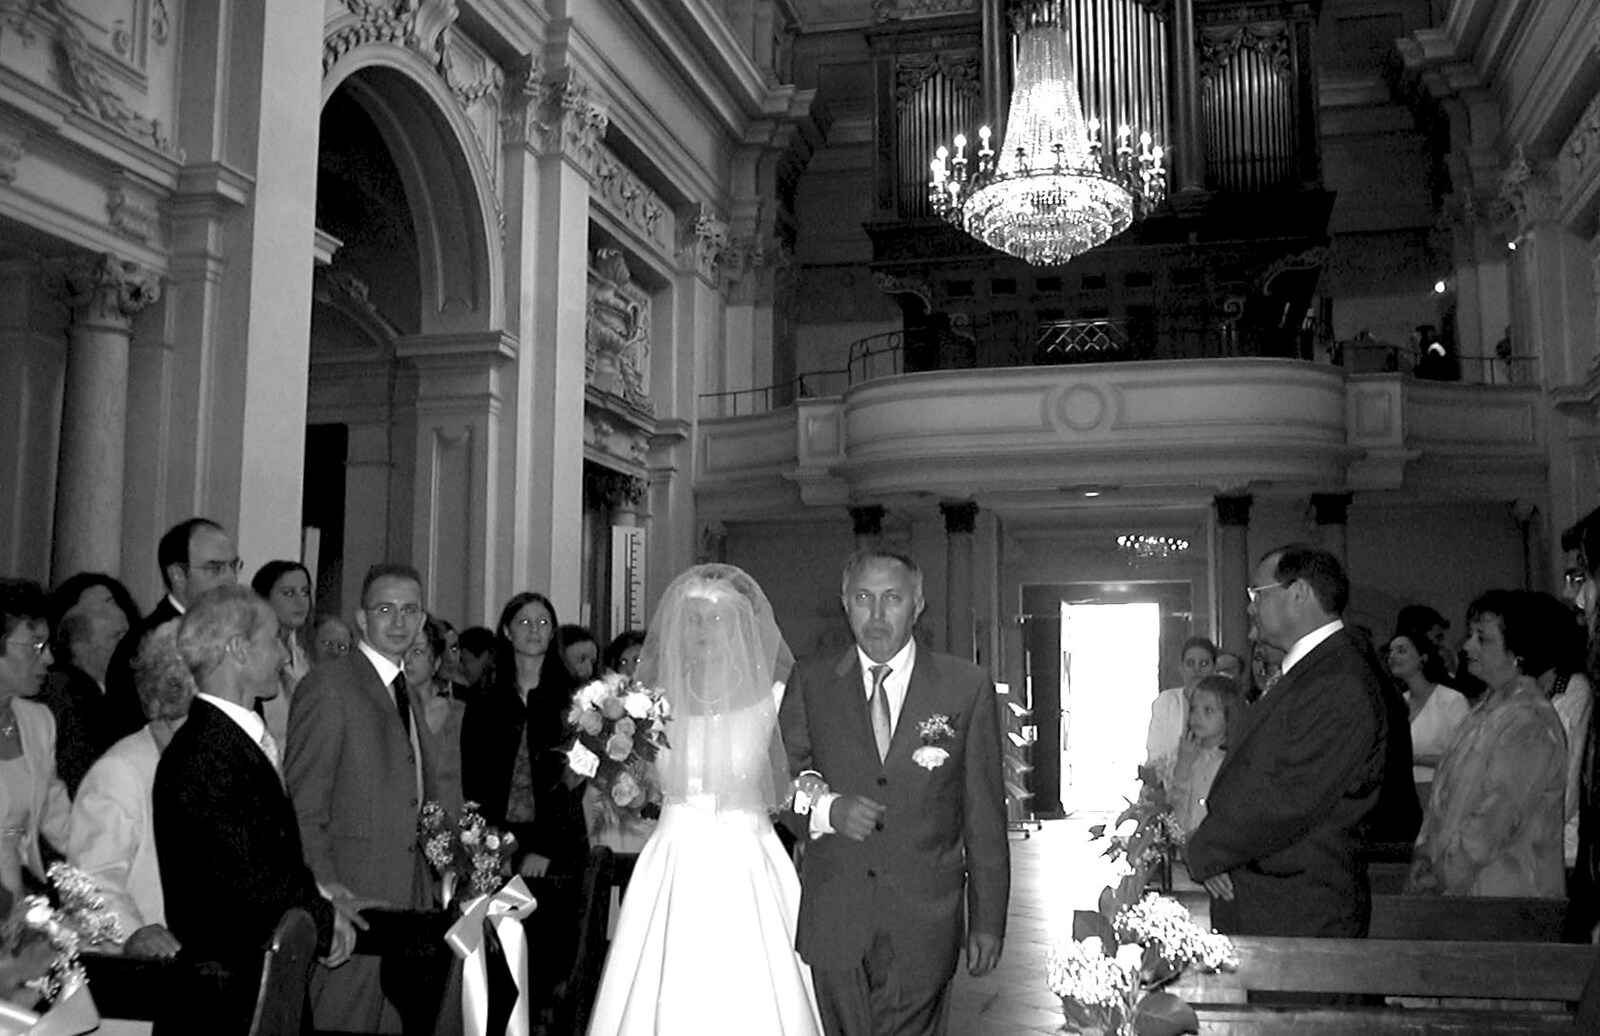 Bruno walks Elisa up the aisle from Elisa and Luigi's Wedding, Carouge, Geneva, Switzerland - 20th July 2001